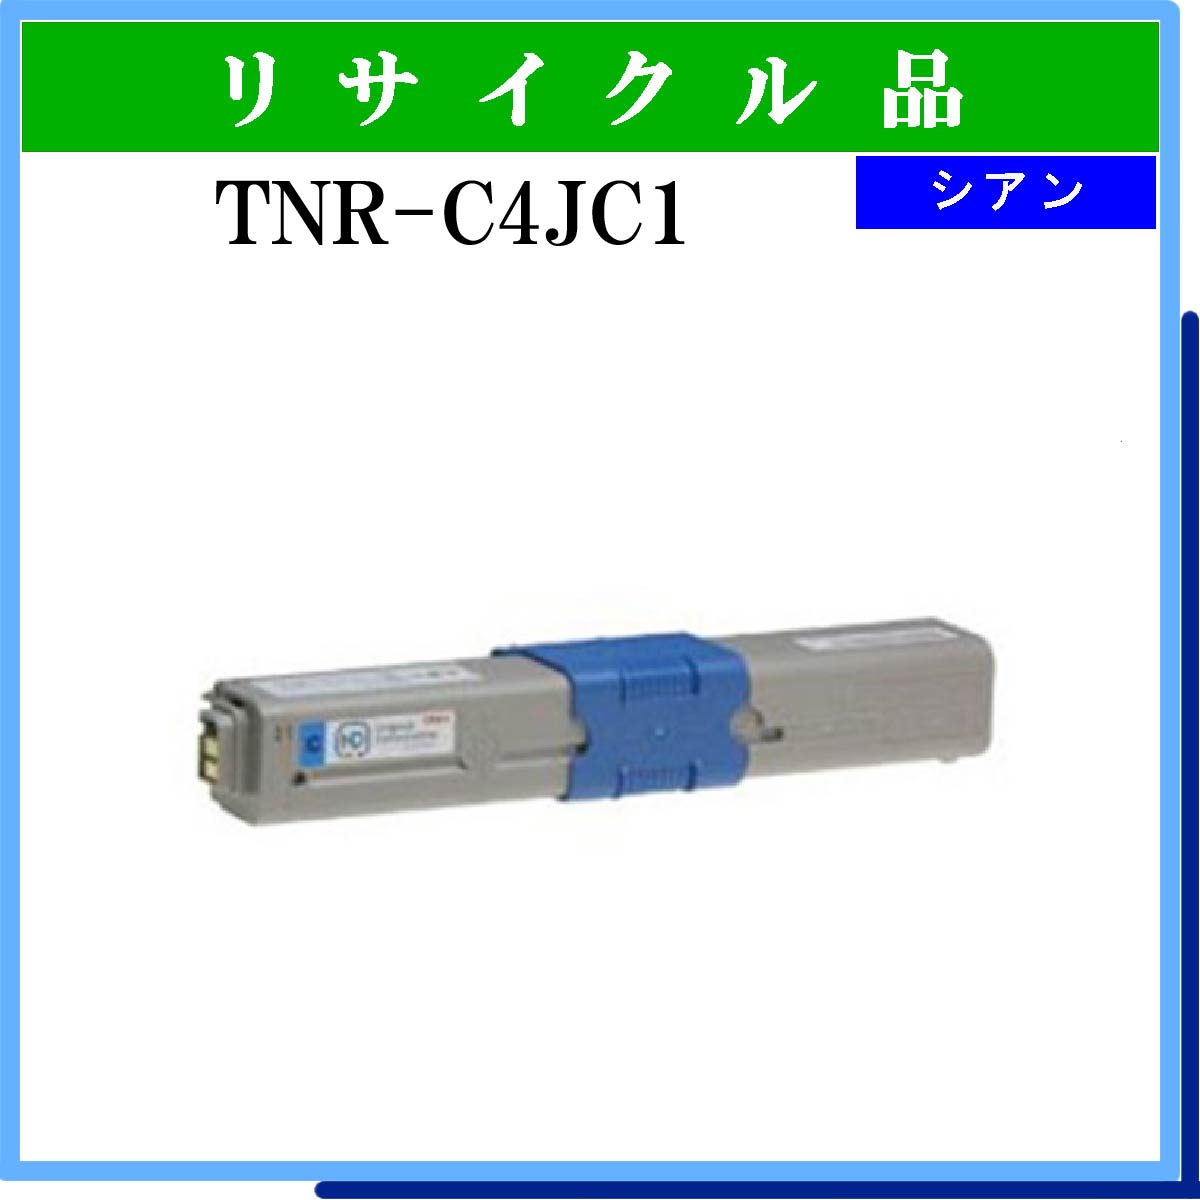 TNR-C4JC1